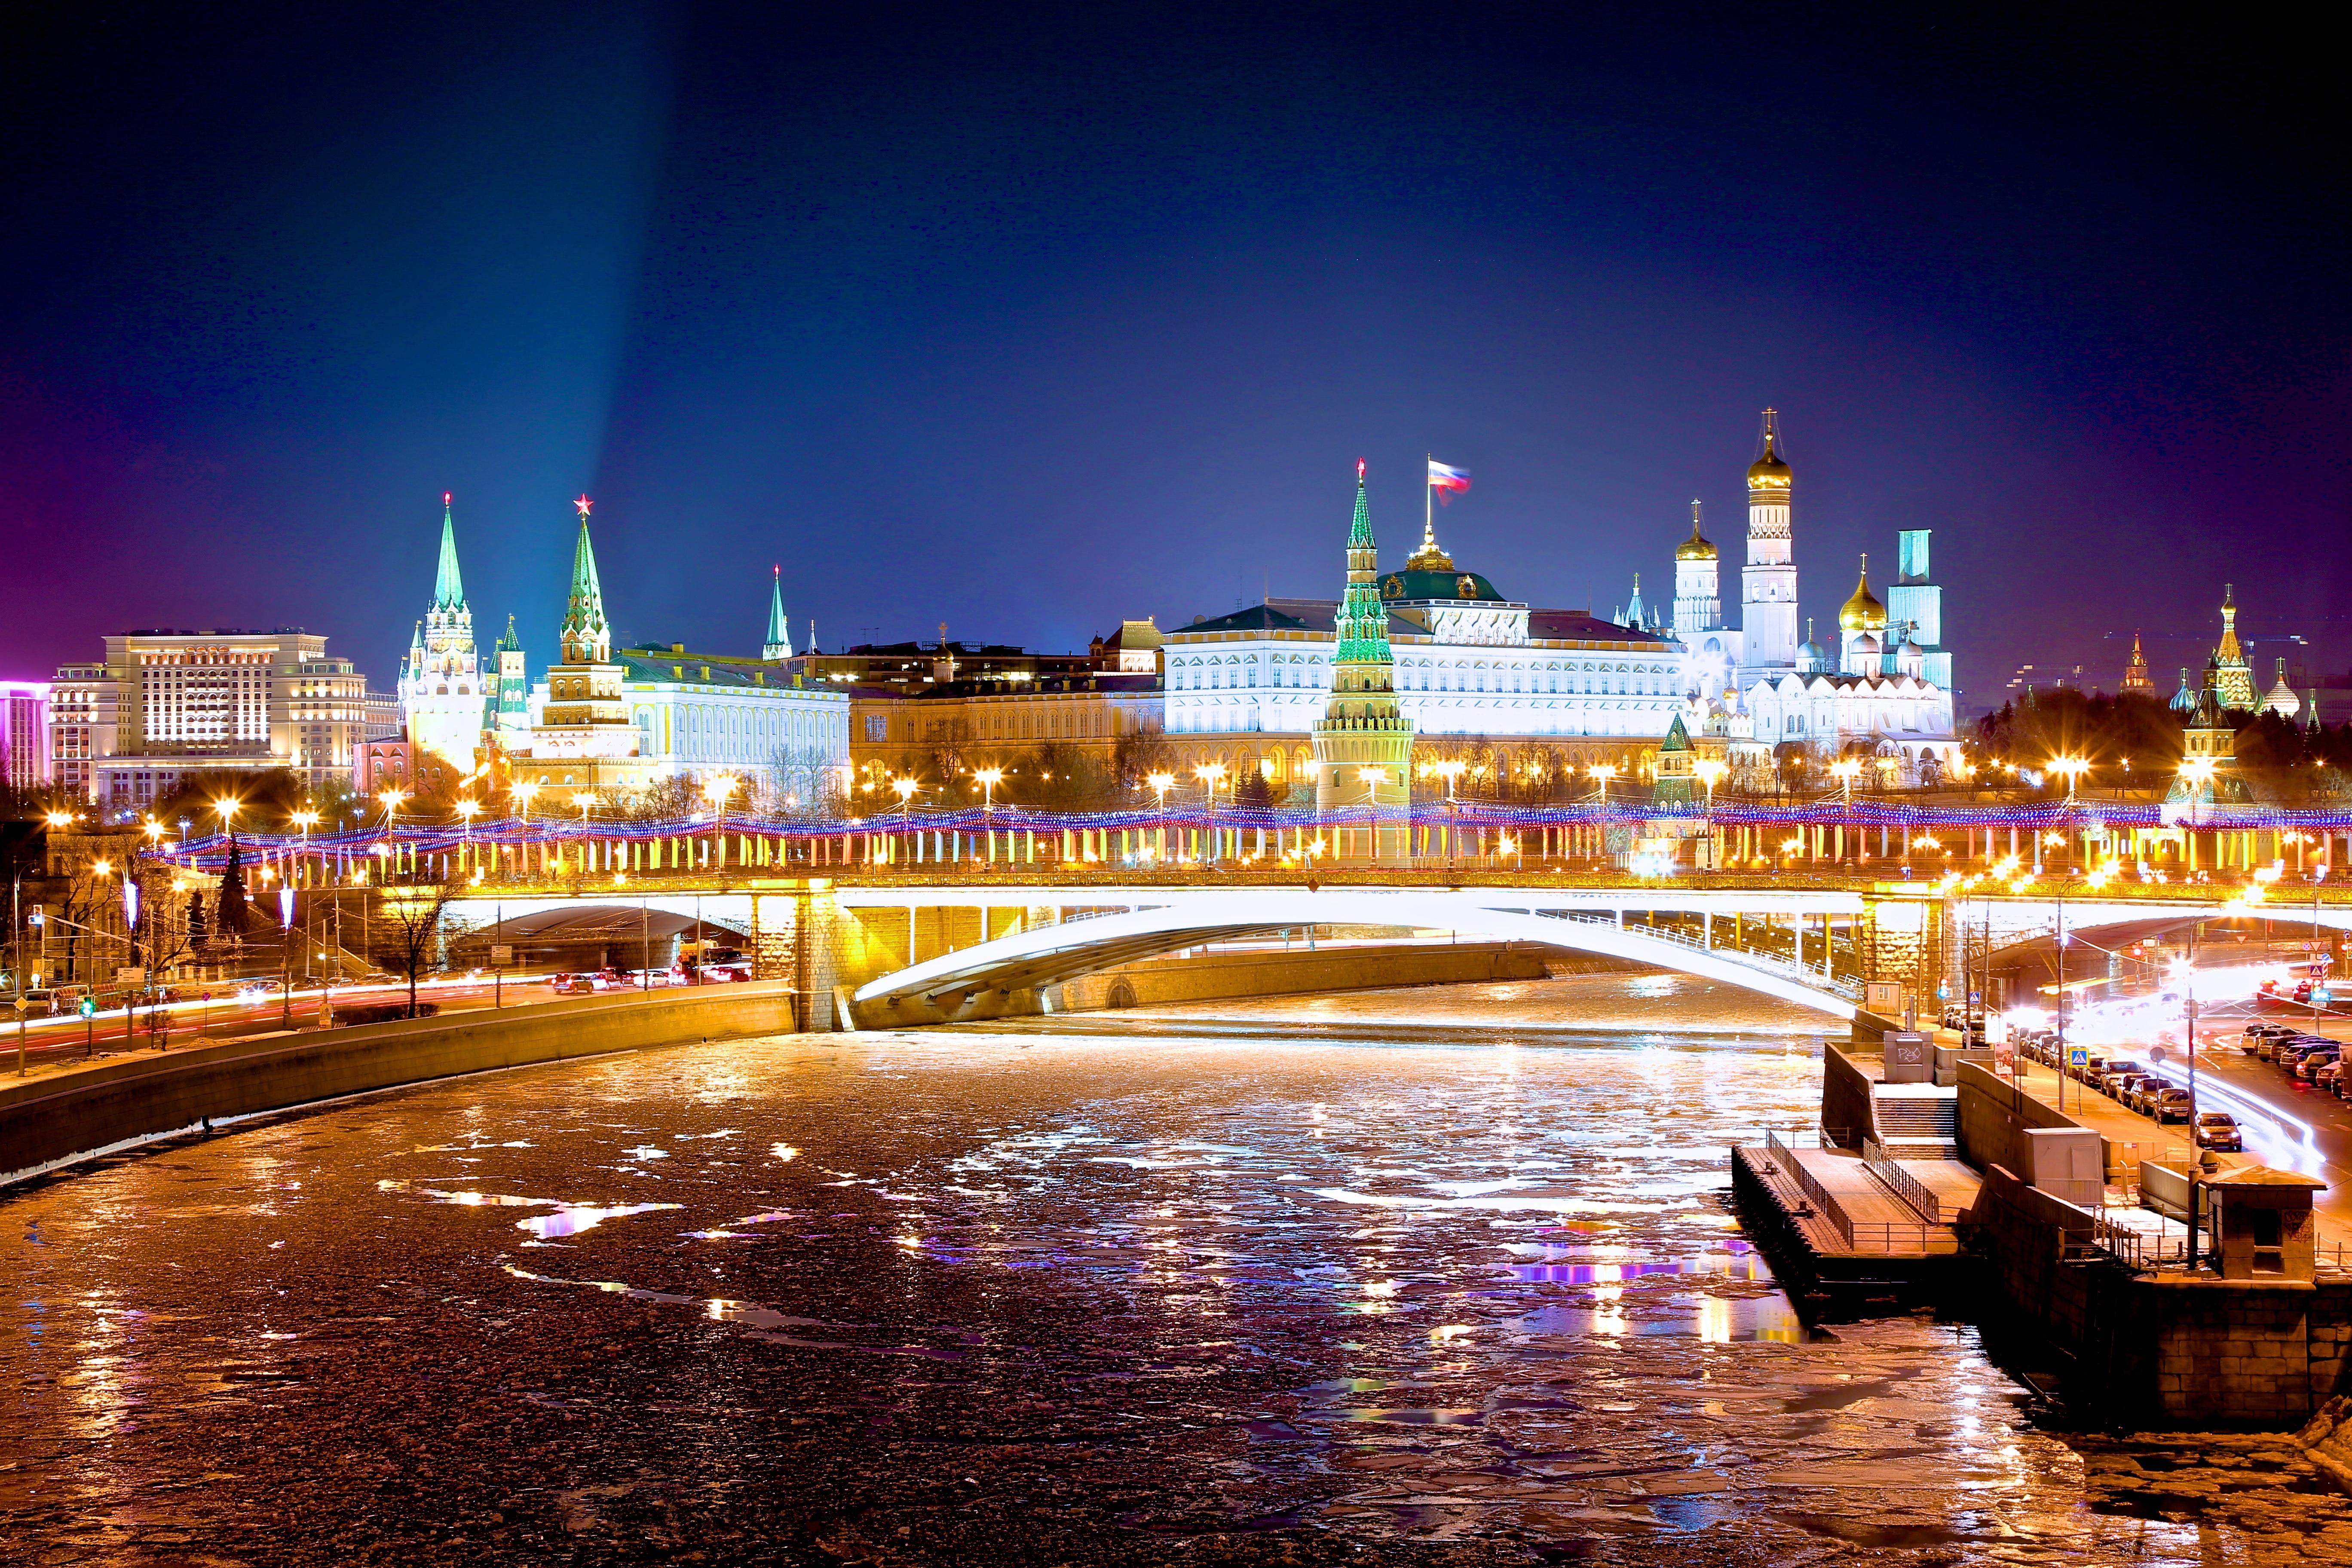 Фото река кремль ночь - бесплатные картинки на Fonwall